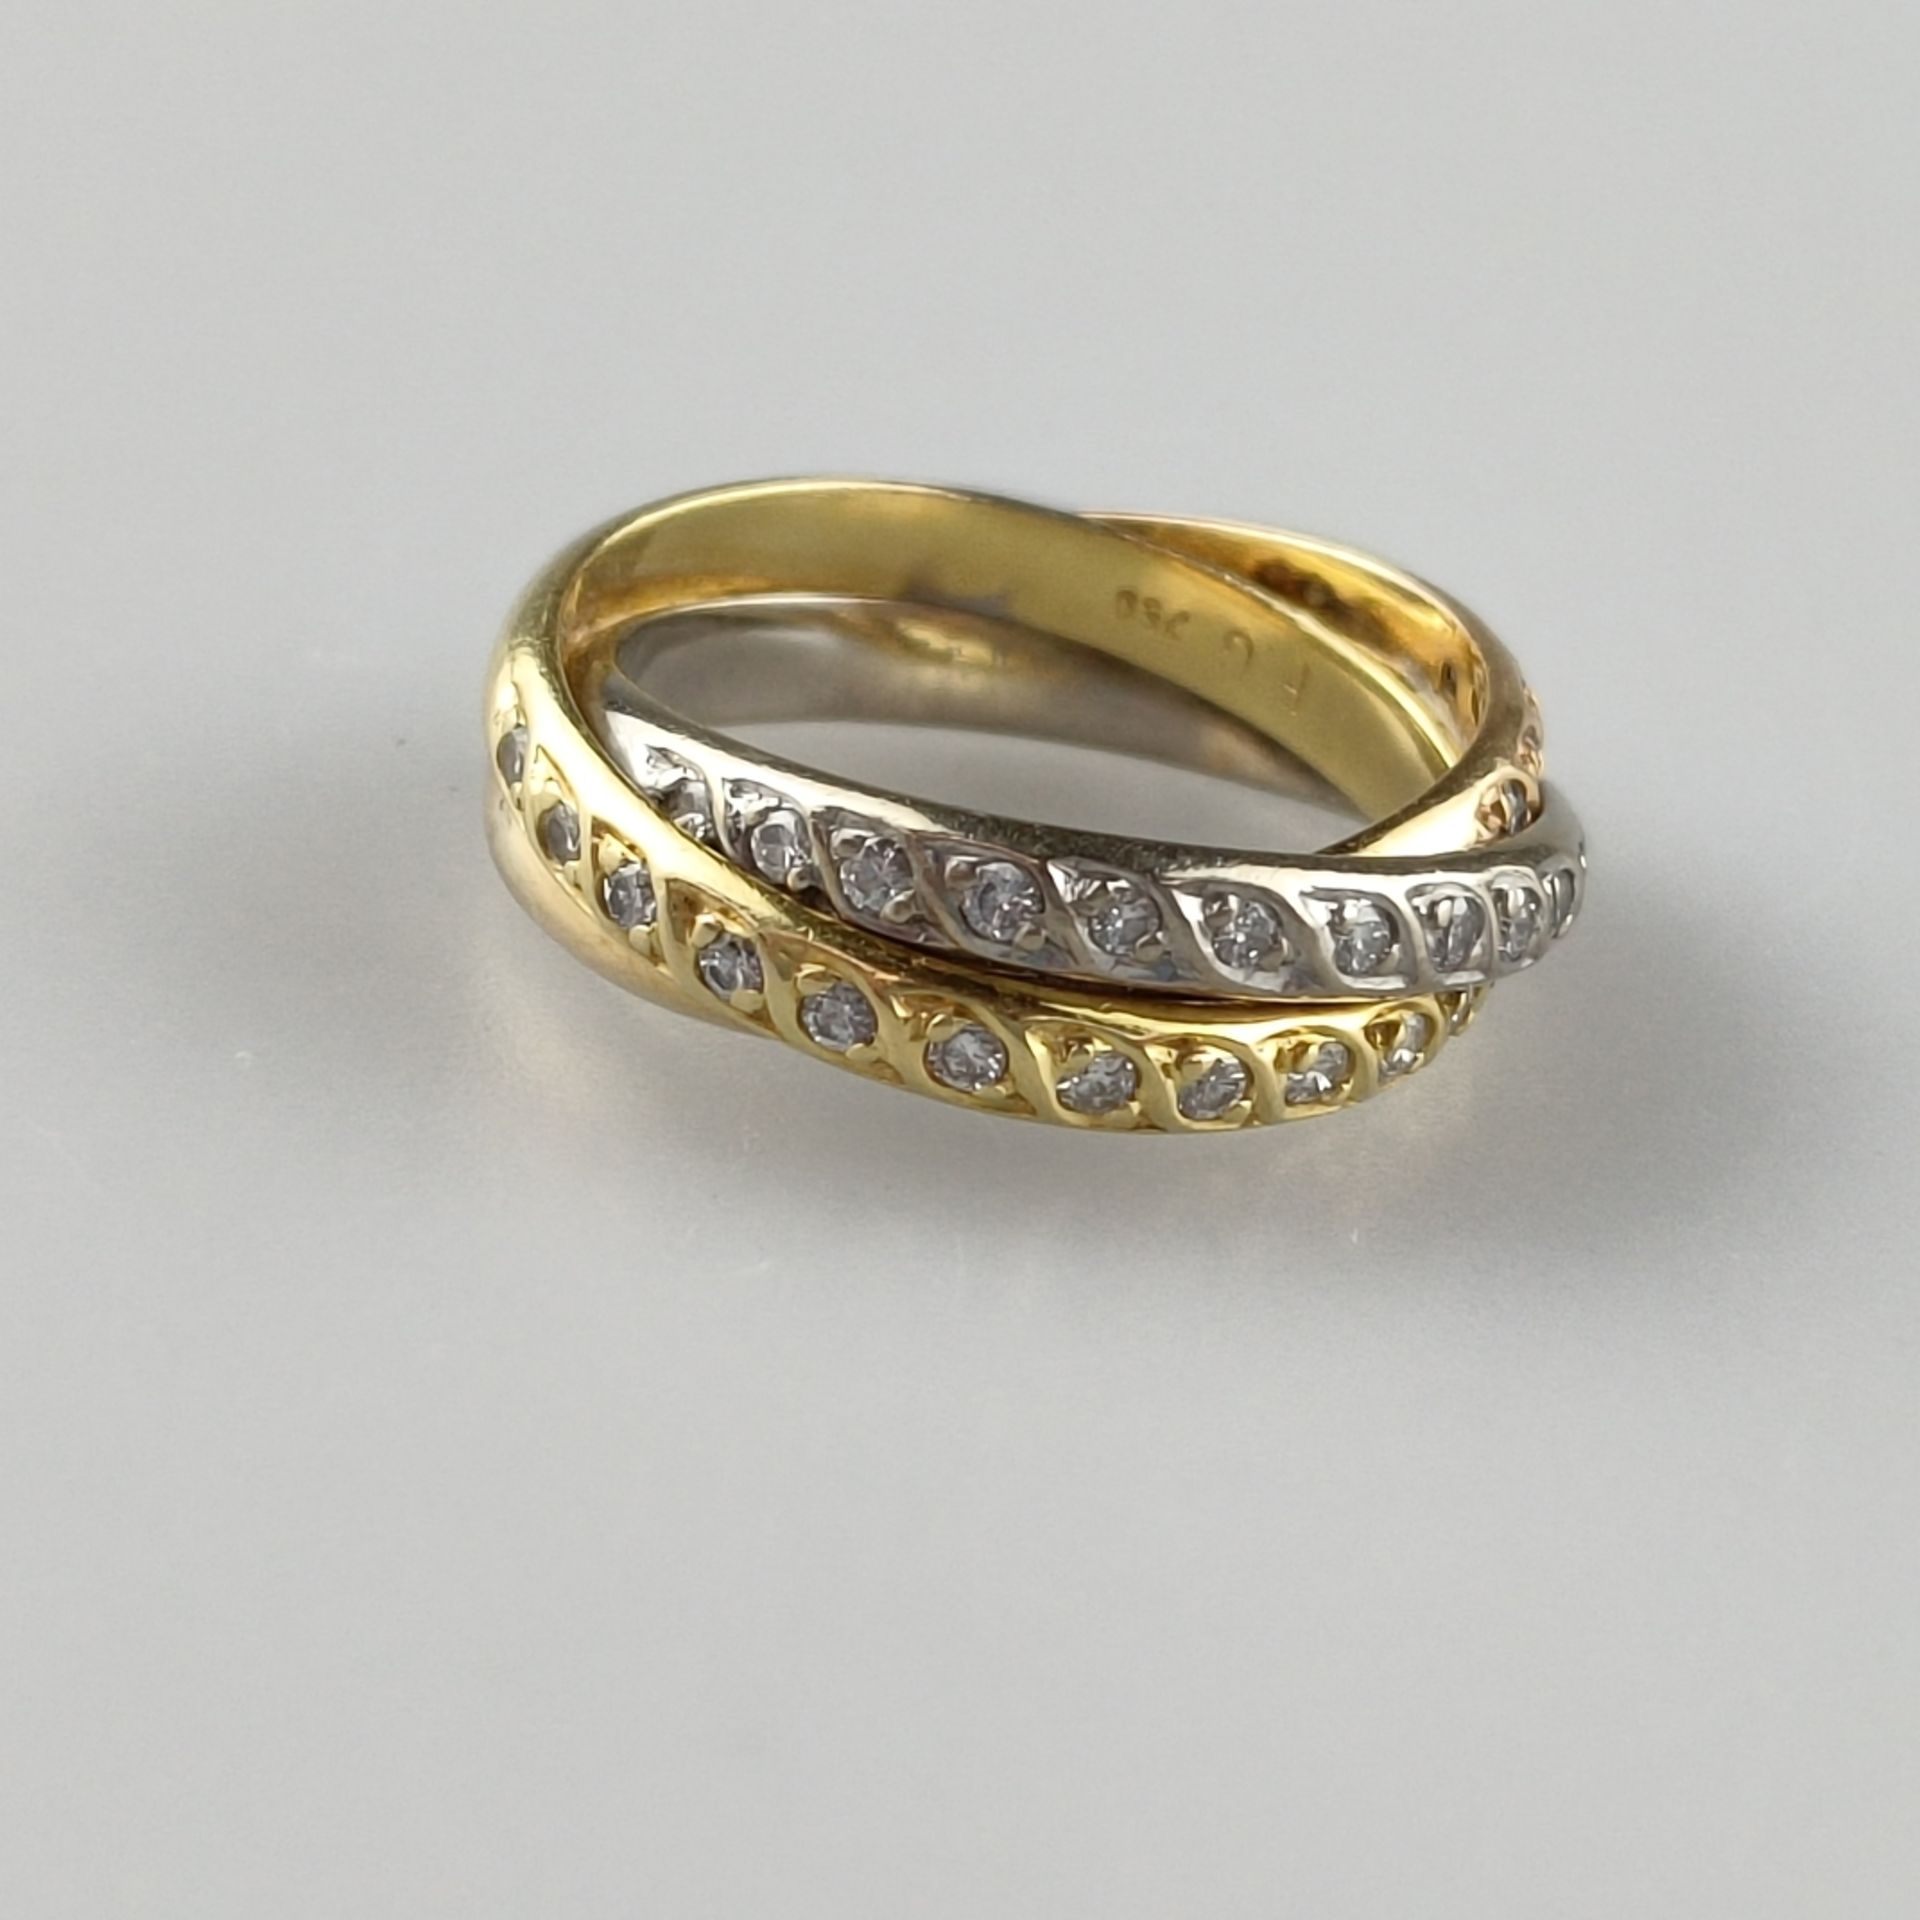 Trinity-Ring mit Diamanten - dreifarbig: Weiß-/Rosé-/Gelbgold 750/000 (18 K), gestempelt, ausgefass - Bild 3 aus 5